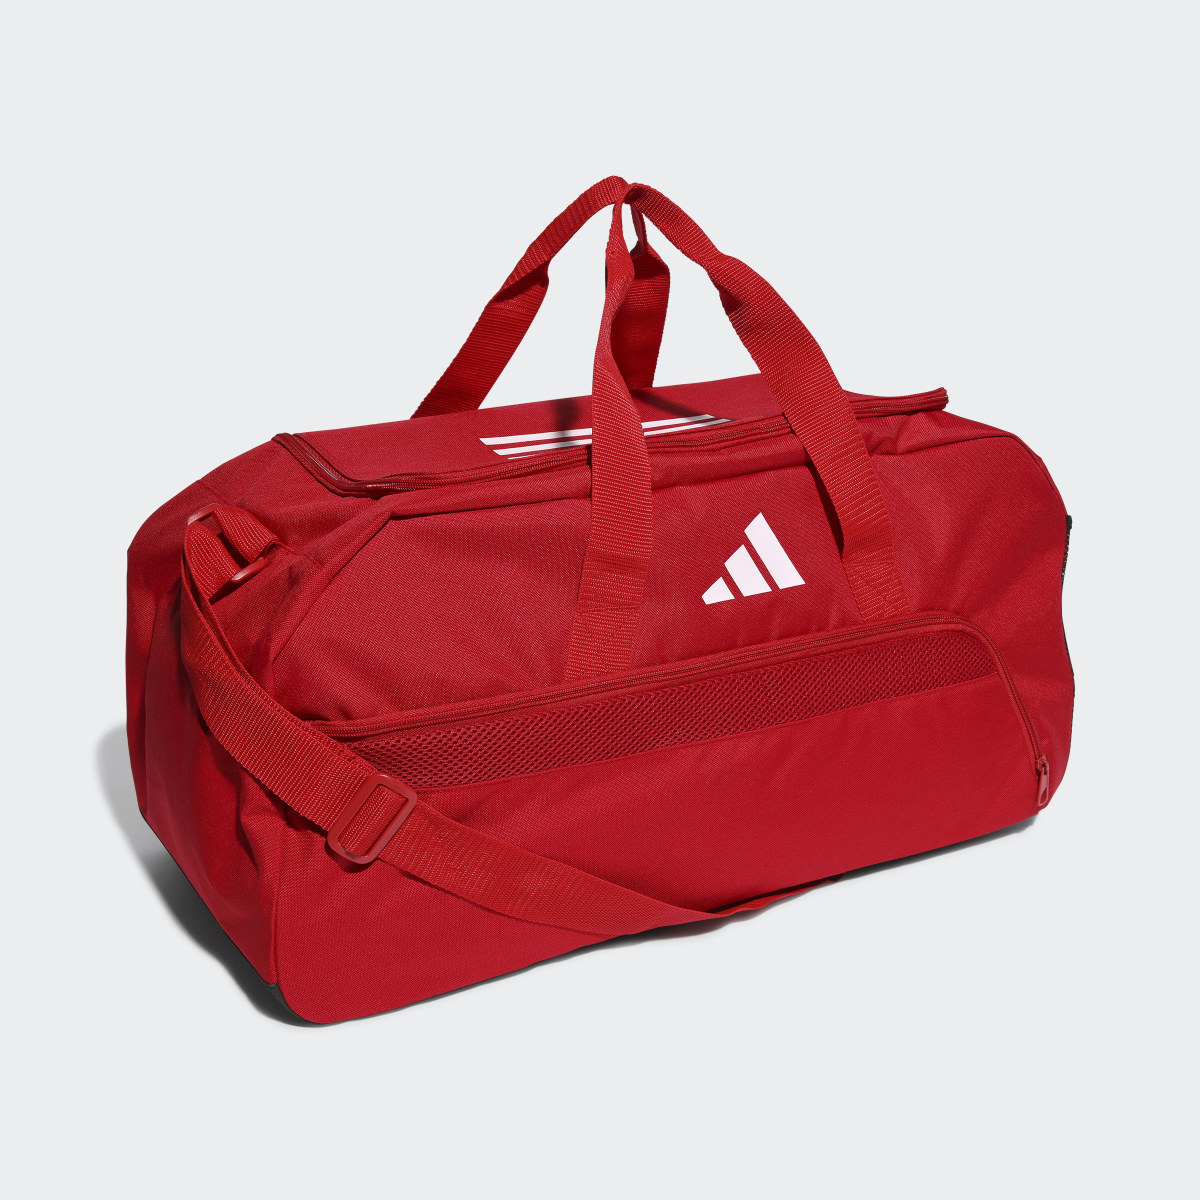 Adidas Tiro League Duffel Bag Medium. 4